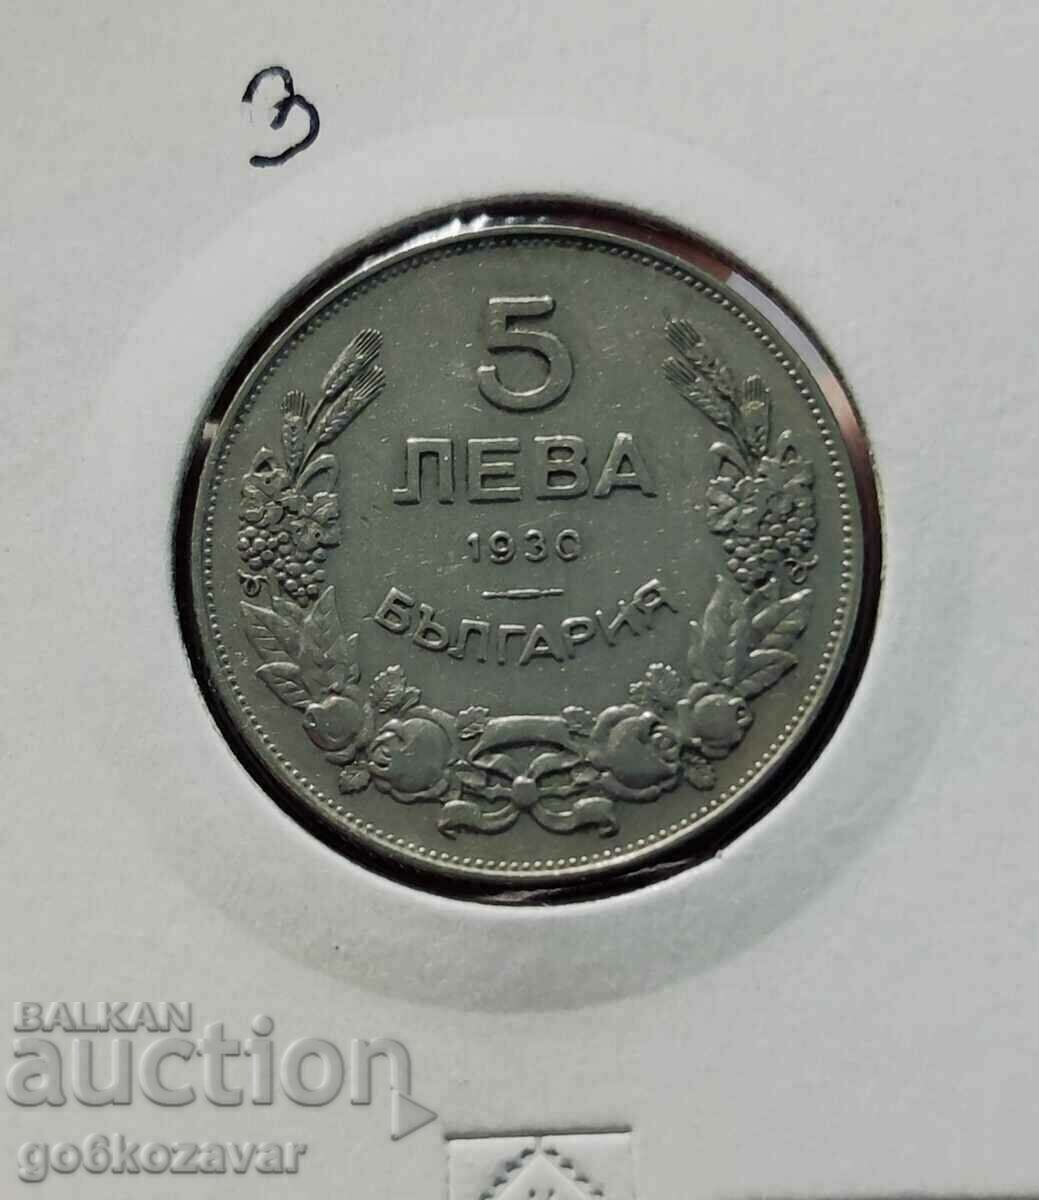 Συλλογή Bulgaria 5 BGN 1930!